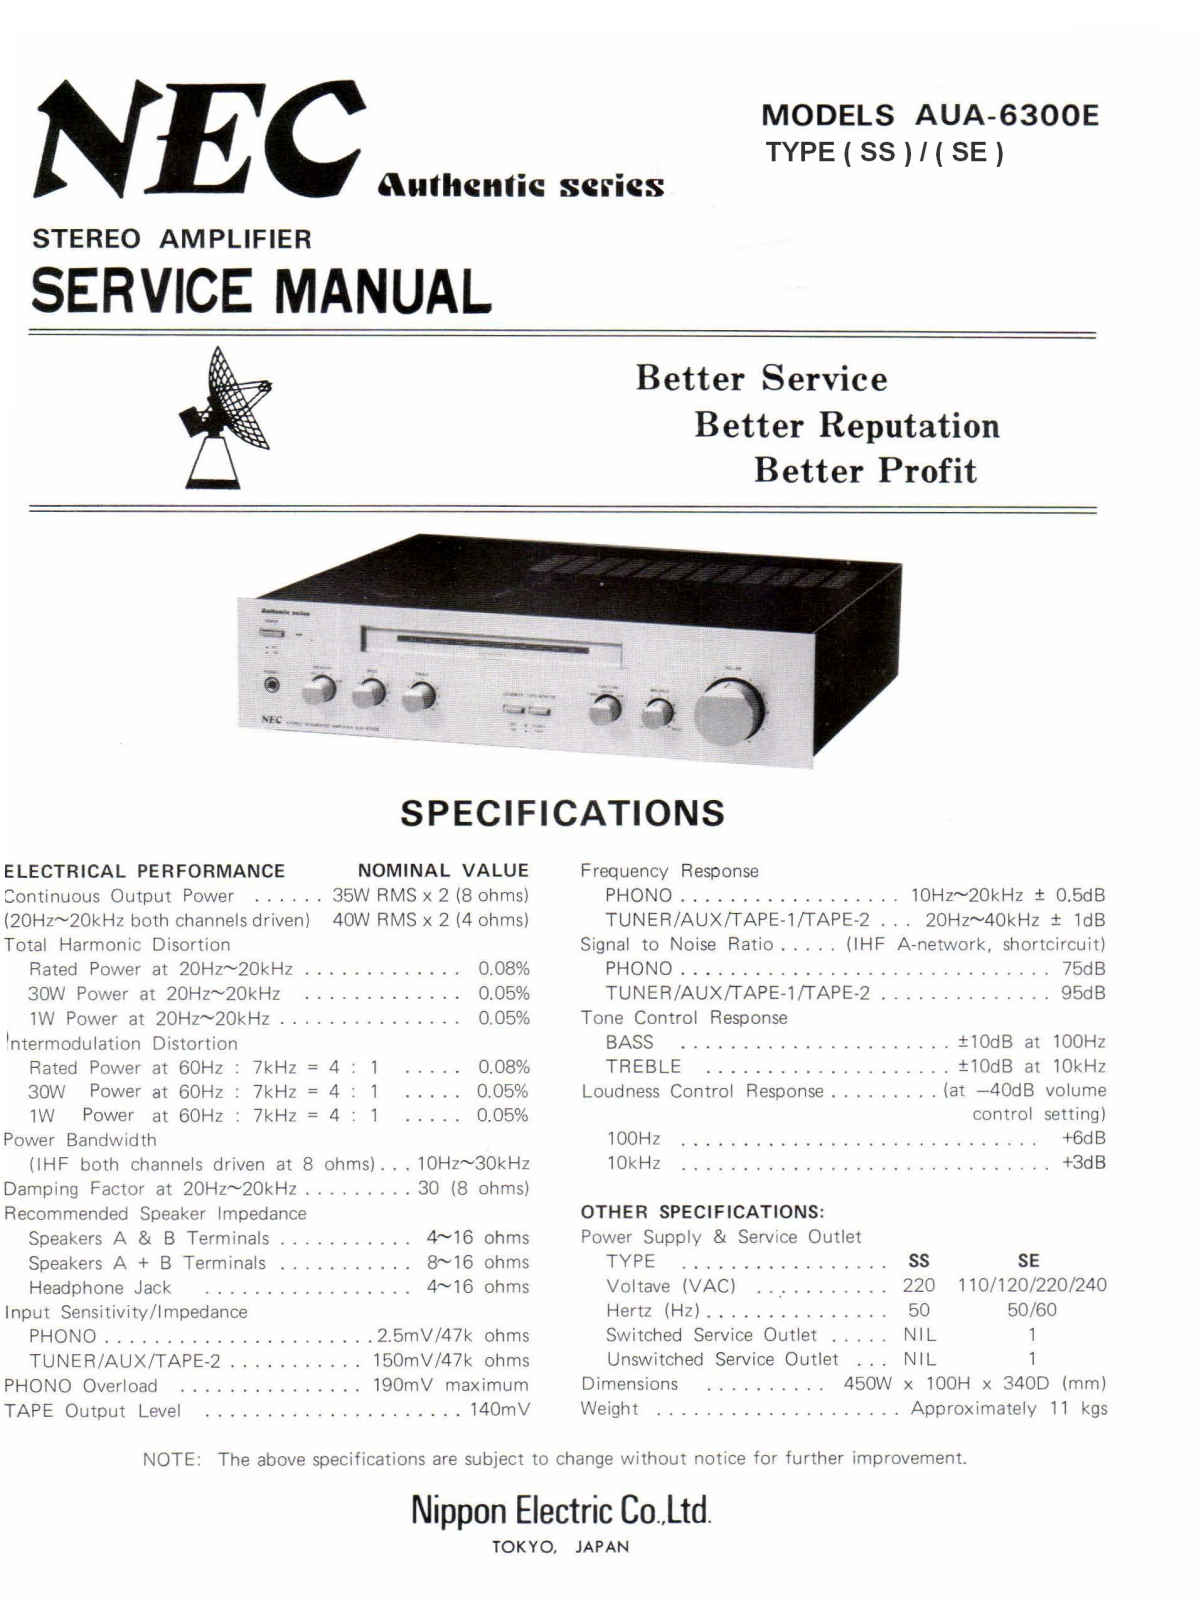 Nec AUA-6300E Service Manual